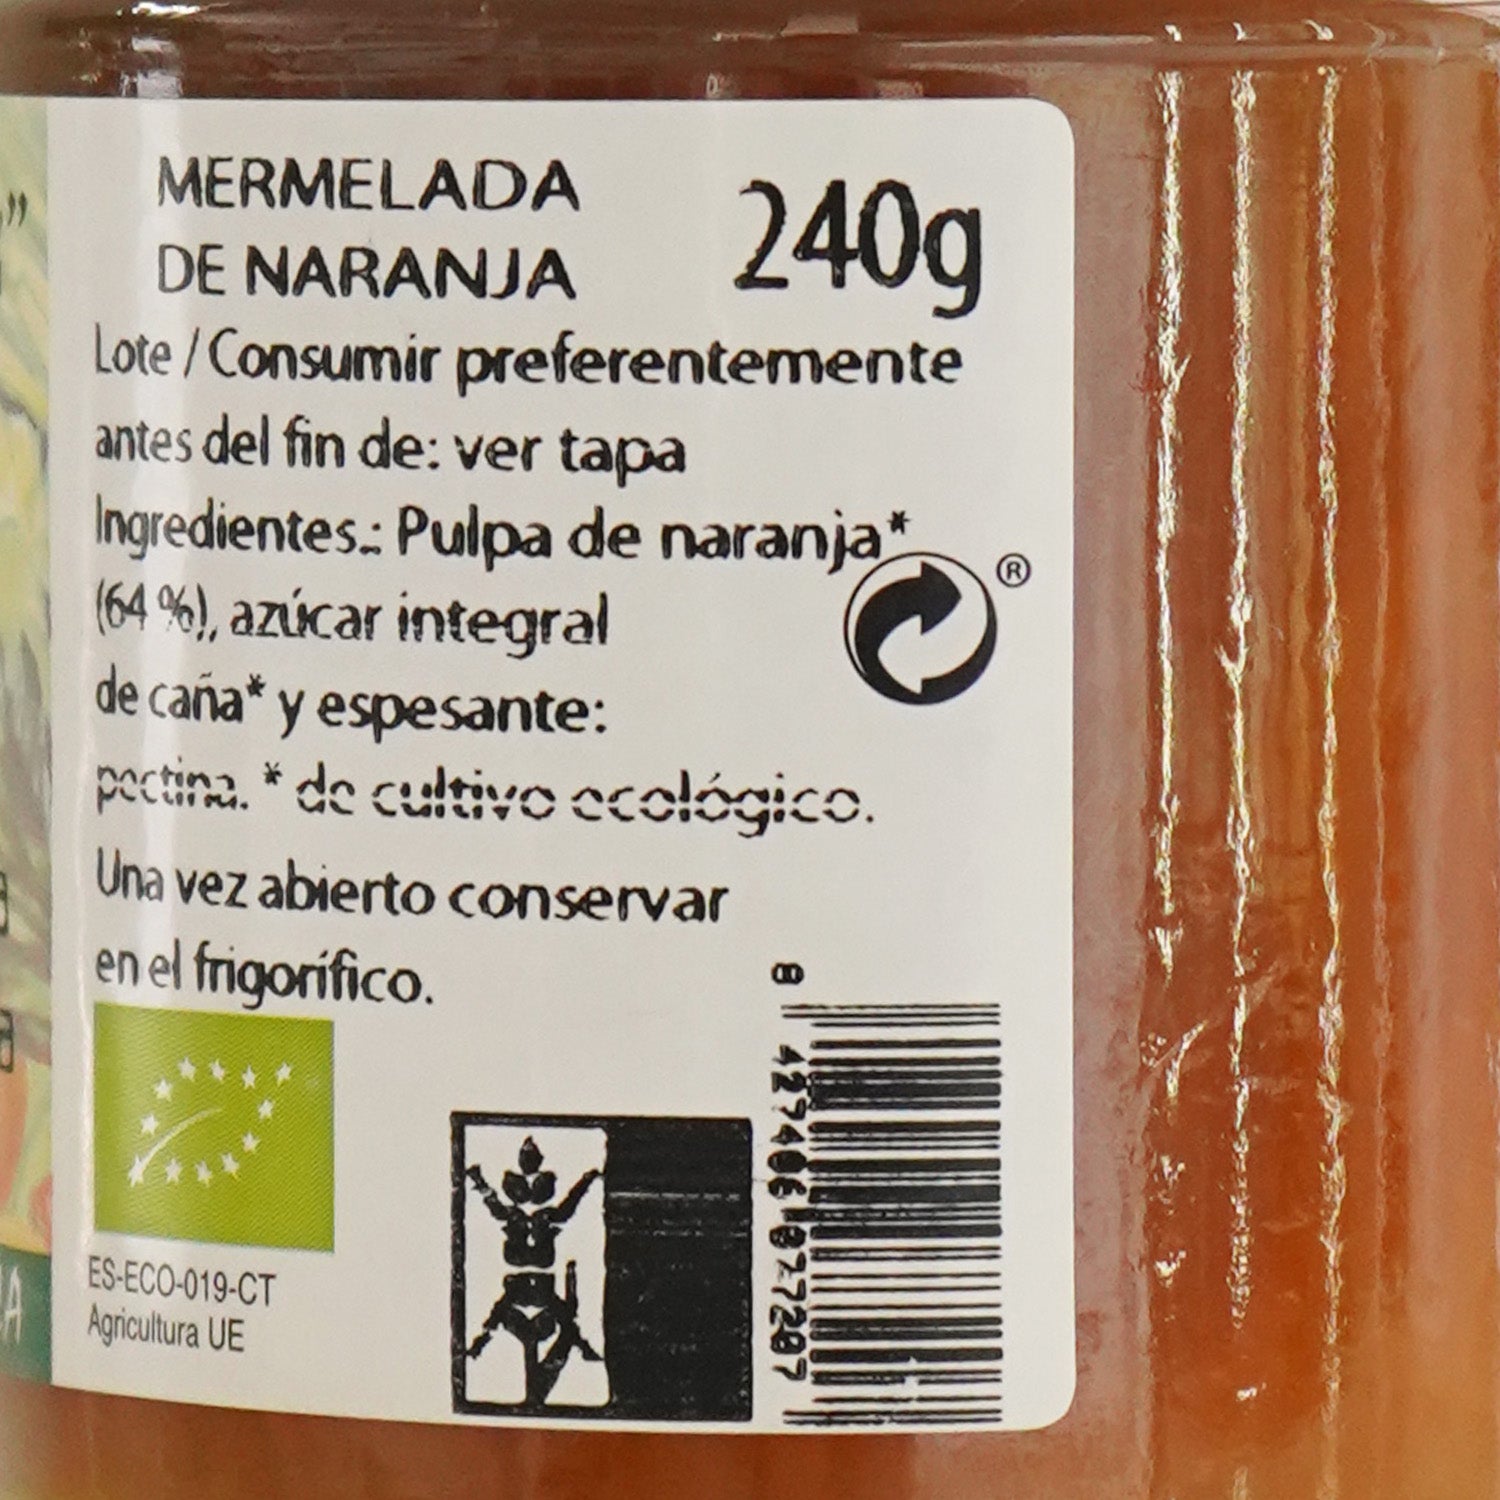 Mermelada de naranja ecológica - 240g